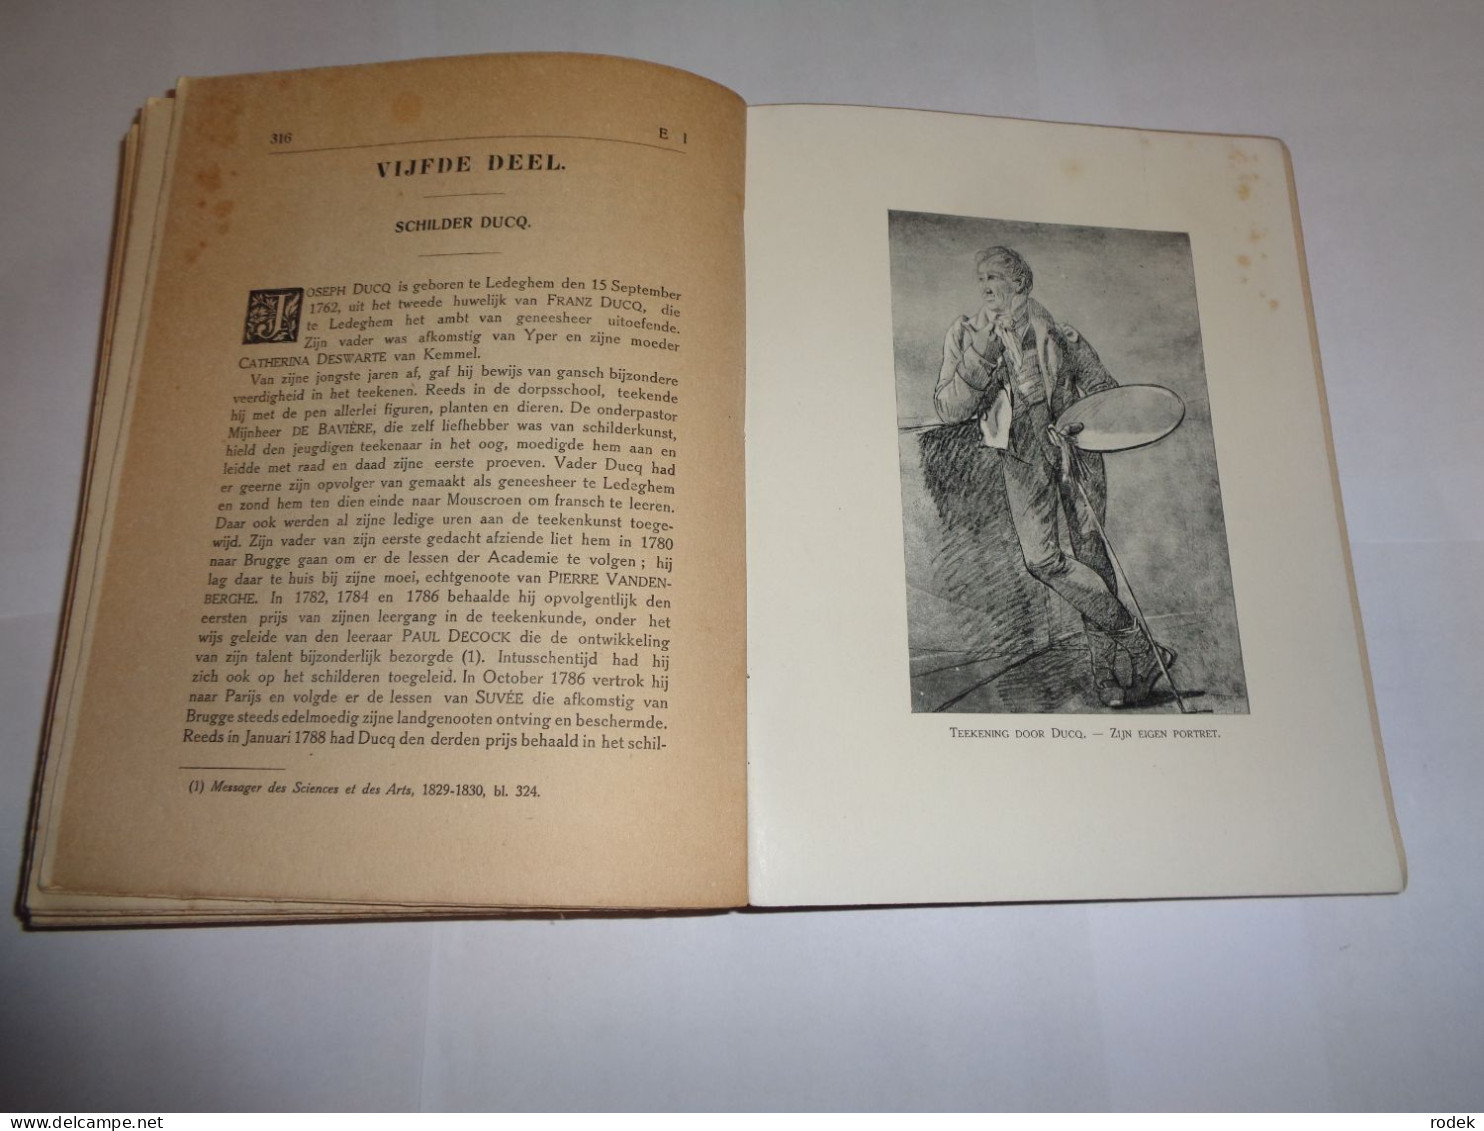 Geschiedenis van Ledeghem door J.Mussely en J.Buysschaert ( Originele uitgave 1912 )